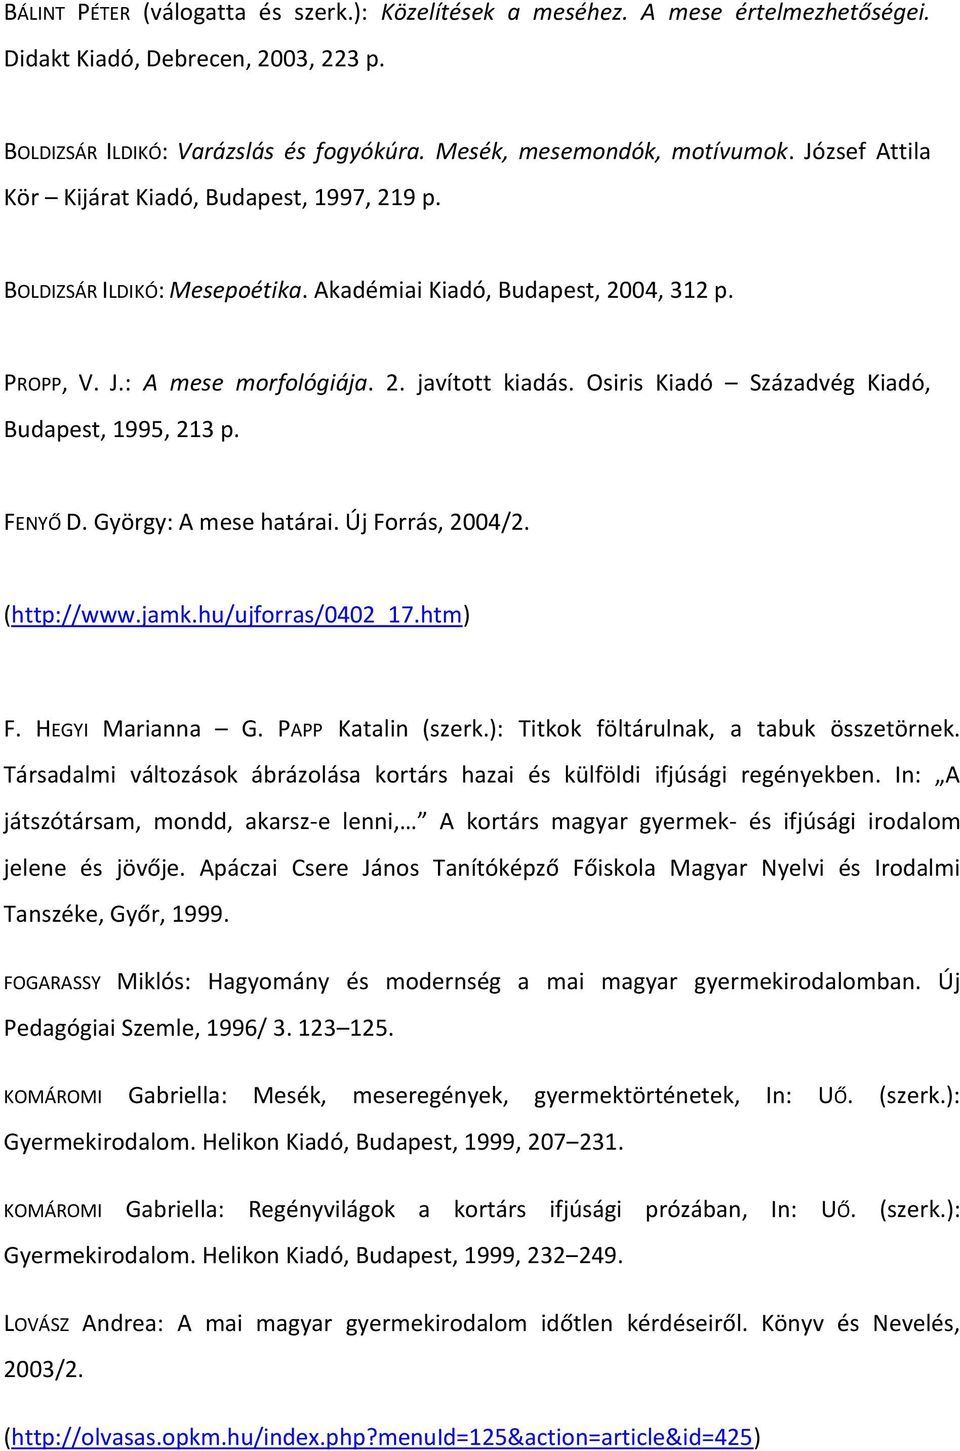 Osiris Kiadó Századvég Kiadó, Budapest, 1995, 213 p. FENYŐ D. György: A mese határai. Új Forrás, 2004/2. (http://www.jamk.hu/ujforras/0402_17.htm) F. HEGYI Marianna G. PAPP Katalin (szerk.